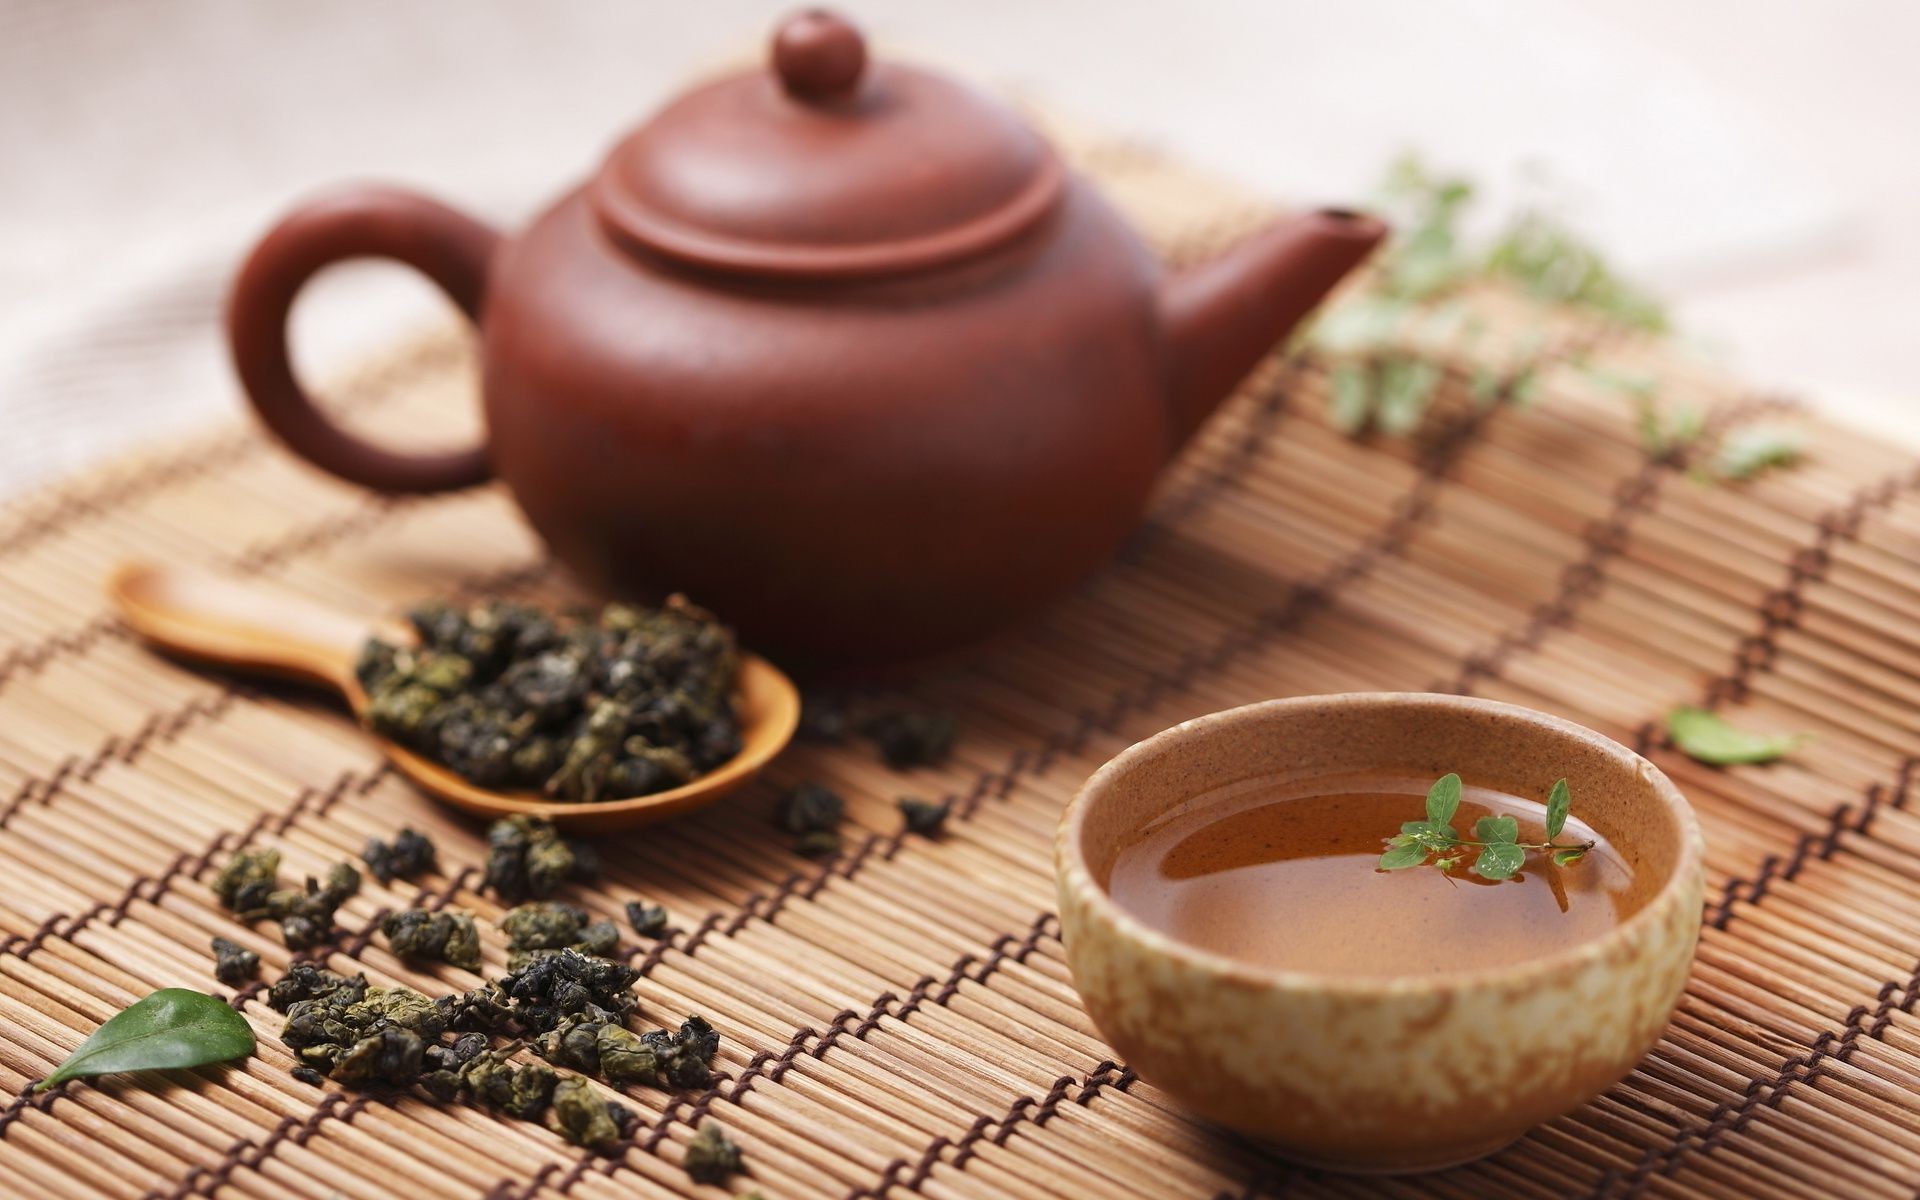 чай чайничек кубок горячая чашка пить посуда традиционные керамический травы чаша еда бамбук горшок травяной глина древесины кружка здоровый